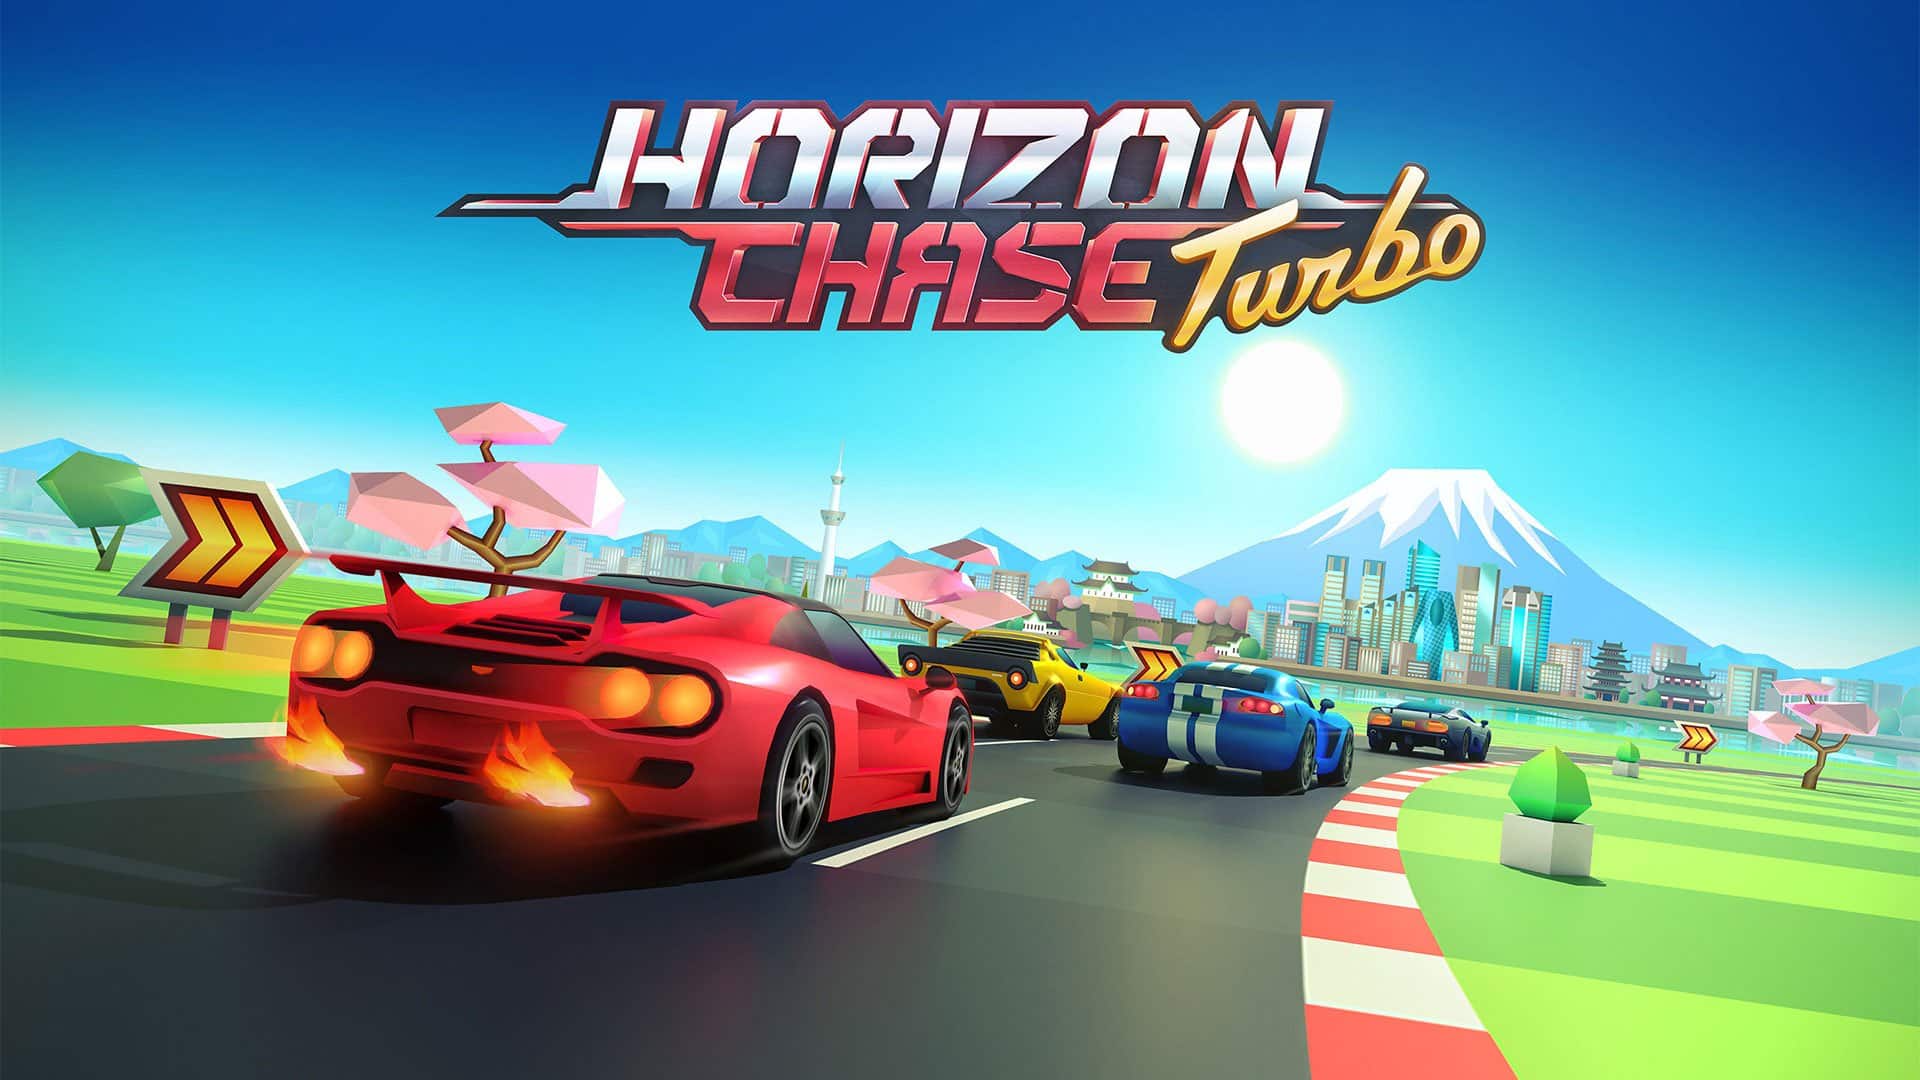 Horizon chase turbo